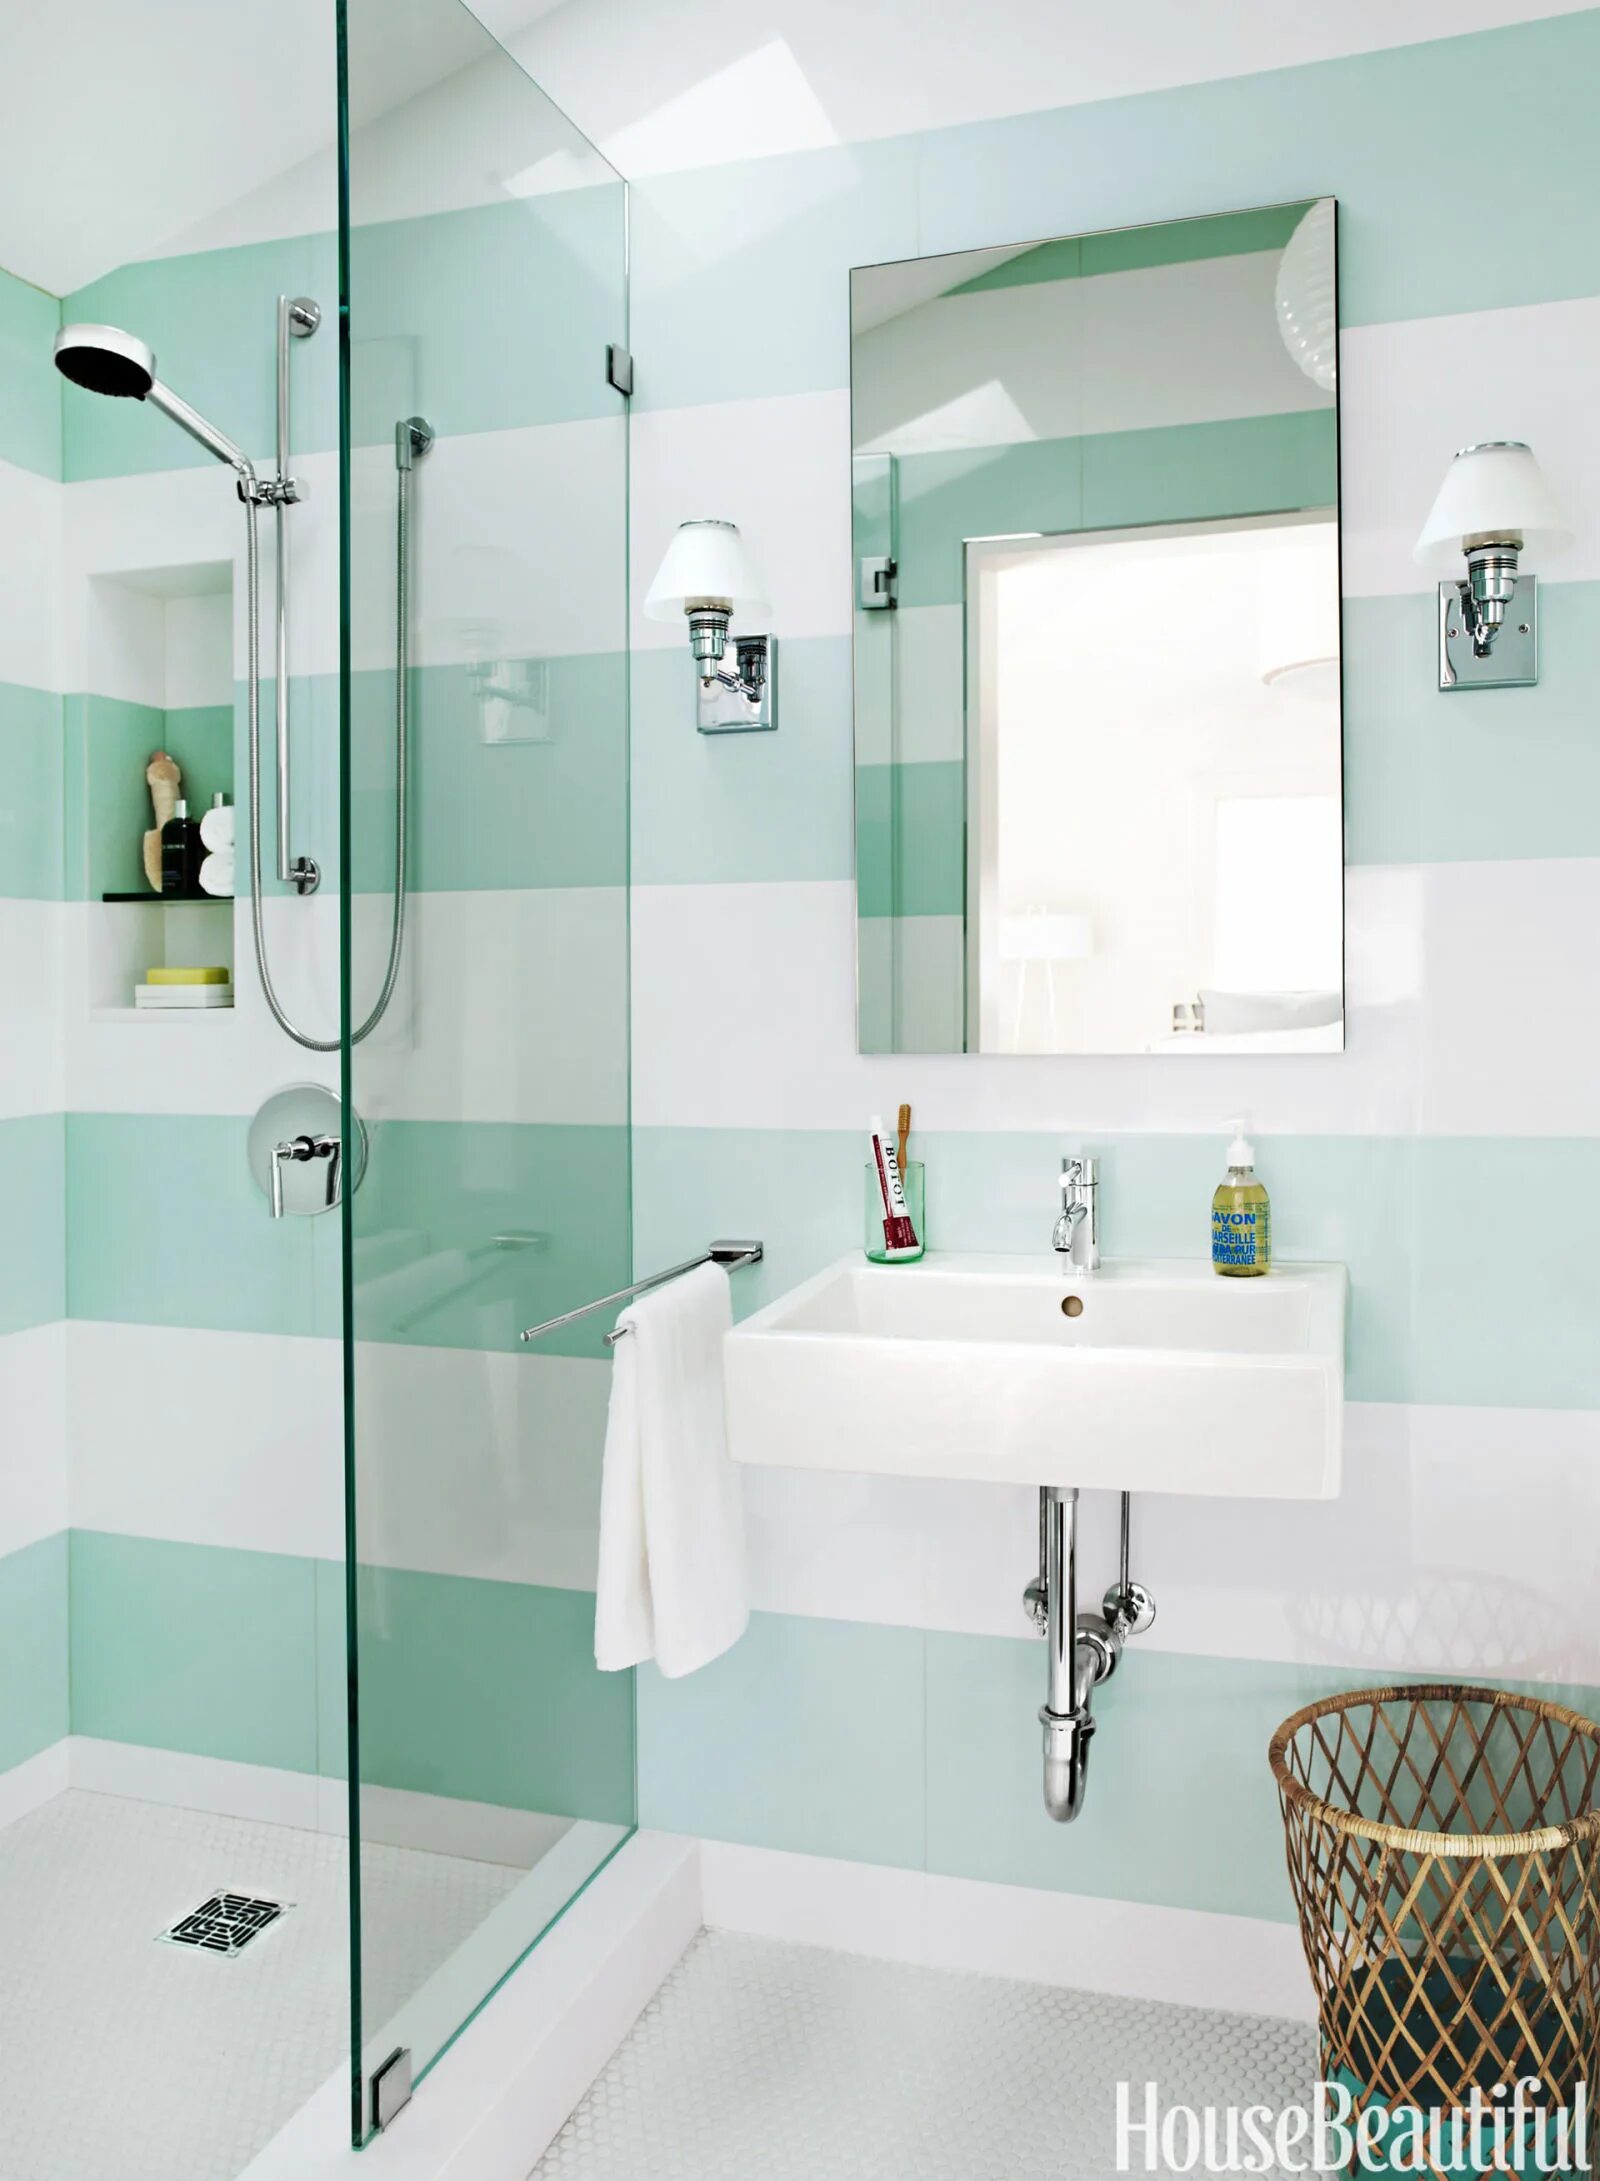 Плитка в маленькой ванне фото. Ванной комнаты. Ванная комната мятного цвета. Расцветка ванной комнаты. Готовые решения для ванной комнаты.